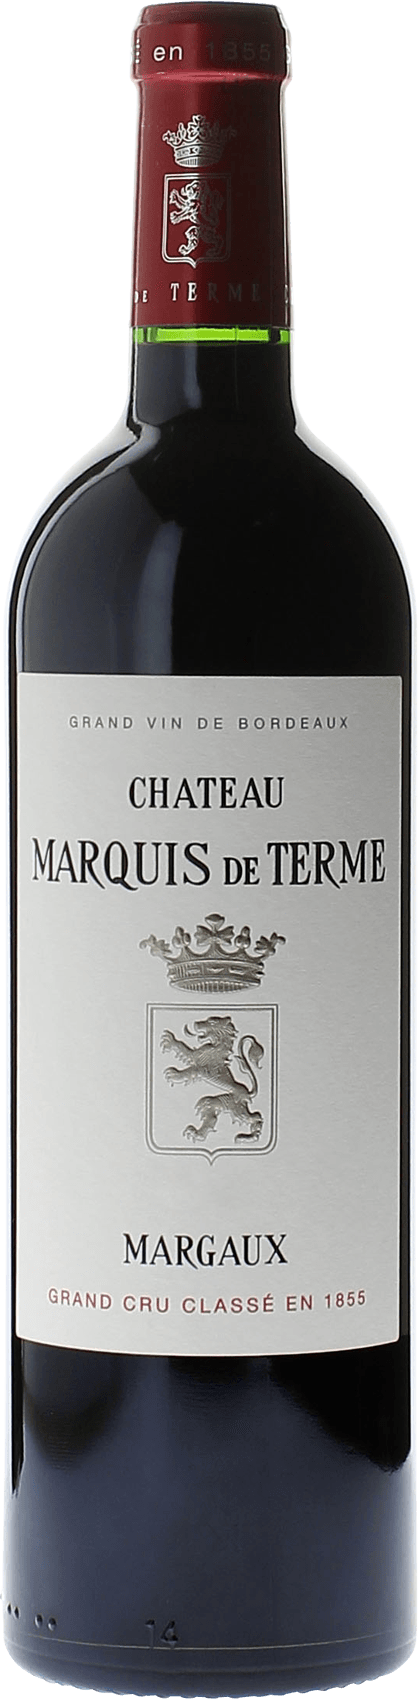 Marquis de terme 1990 4me Grand cru class Margaux, Bordeaux rouge